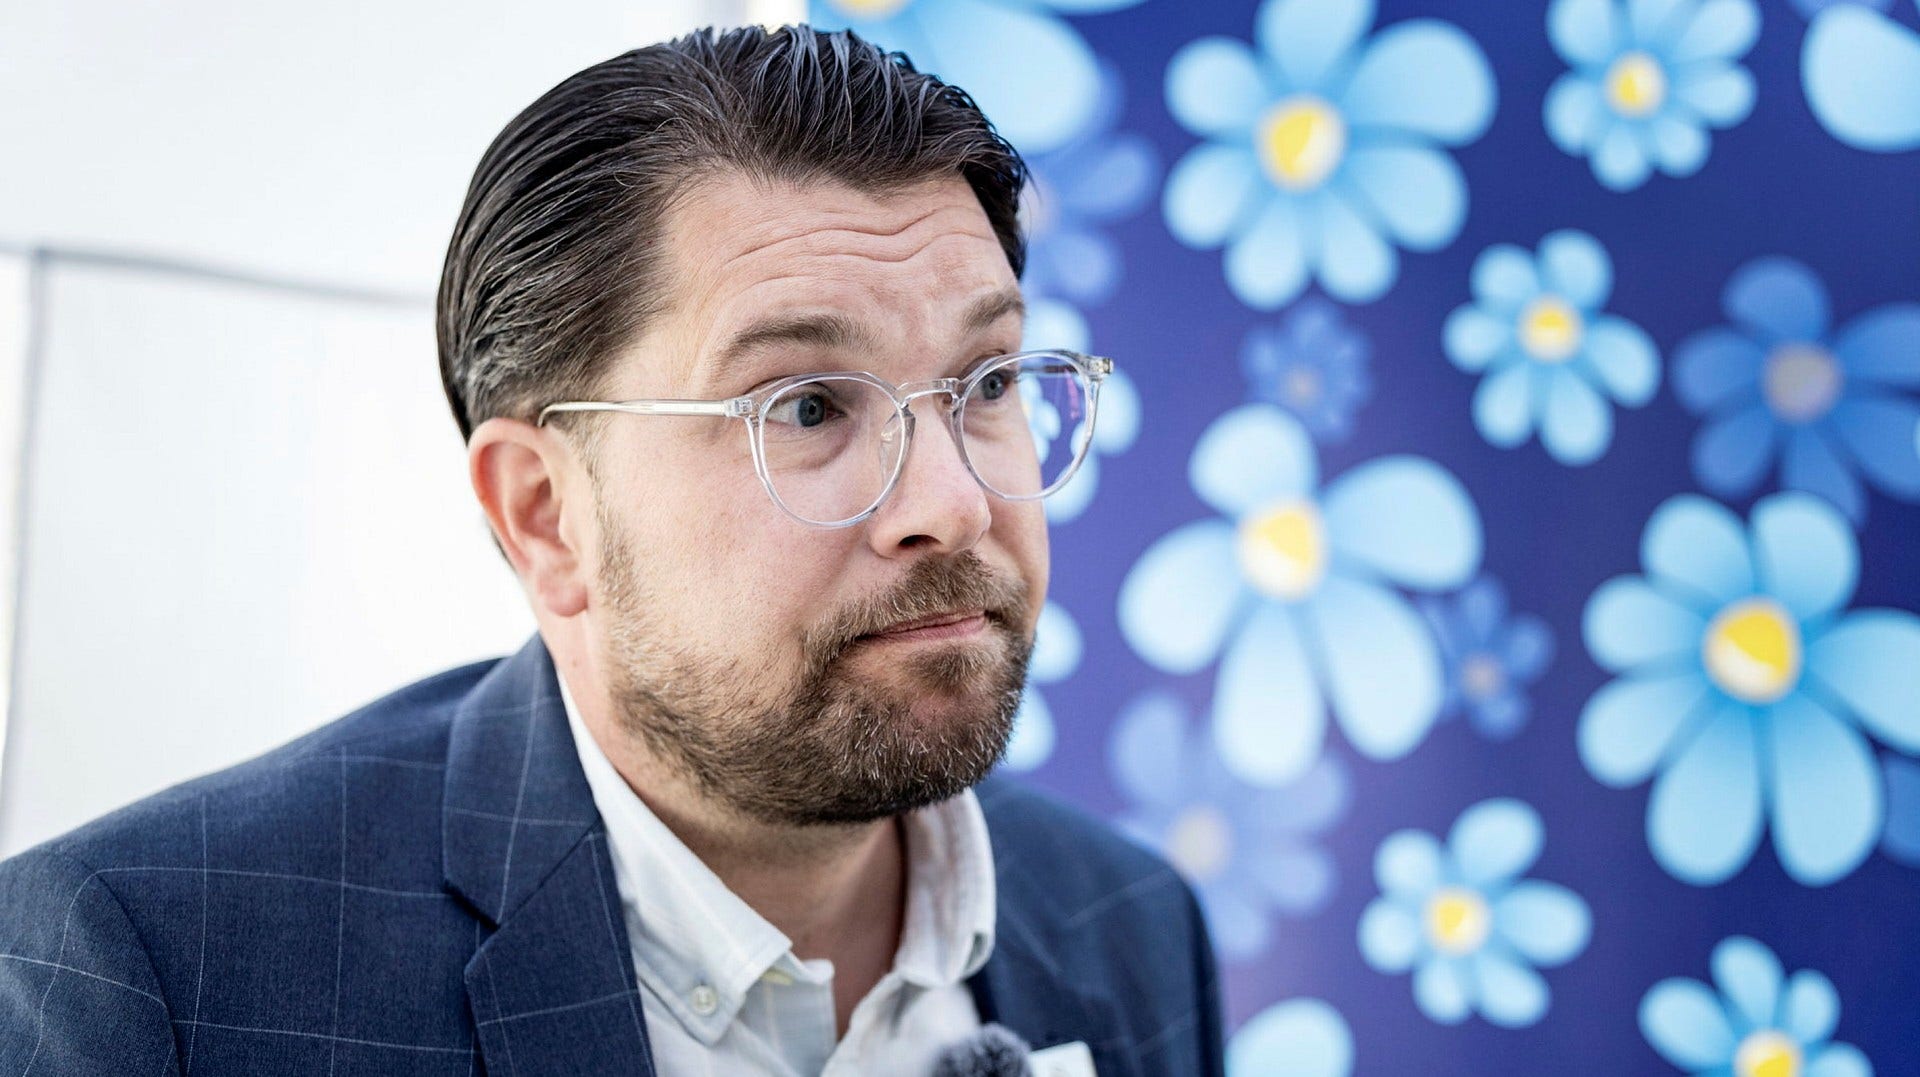 Sverigedemokraternas partiledare Jimmie Åkesson intervjuas om avslöjandet i TV4:s ”Kalla fakta” efter ett tal i Umeå i tisdags. Uppgifterna borde nu prövas rättsligt, anser insändarskribenten.